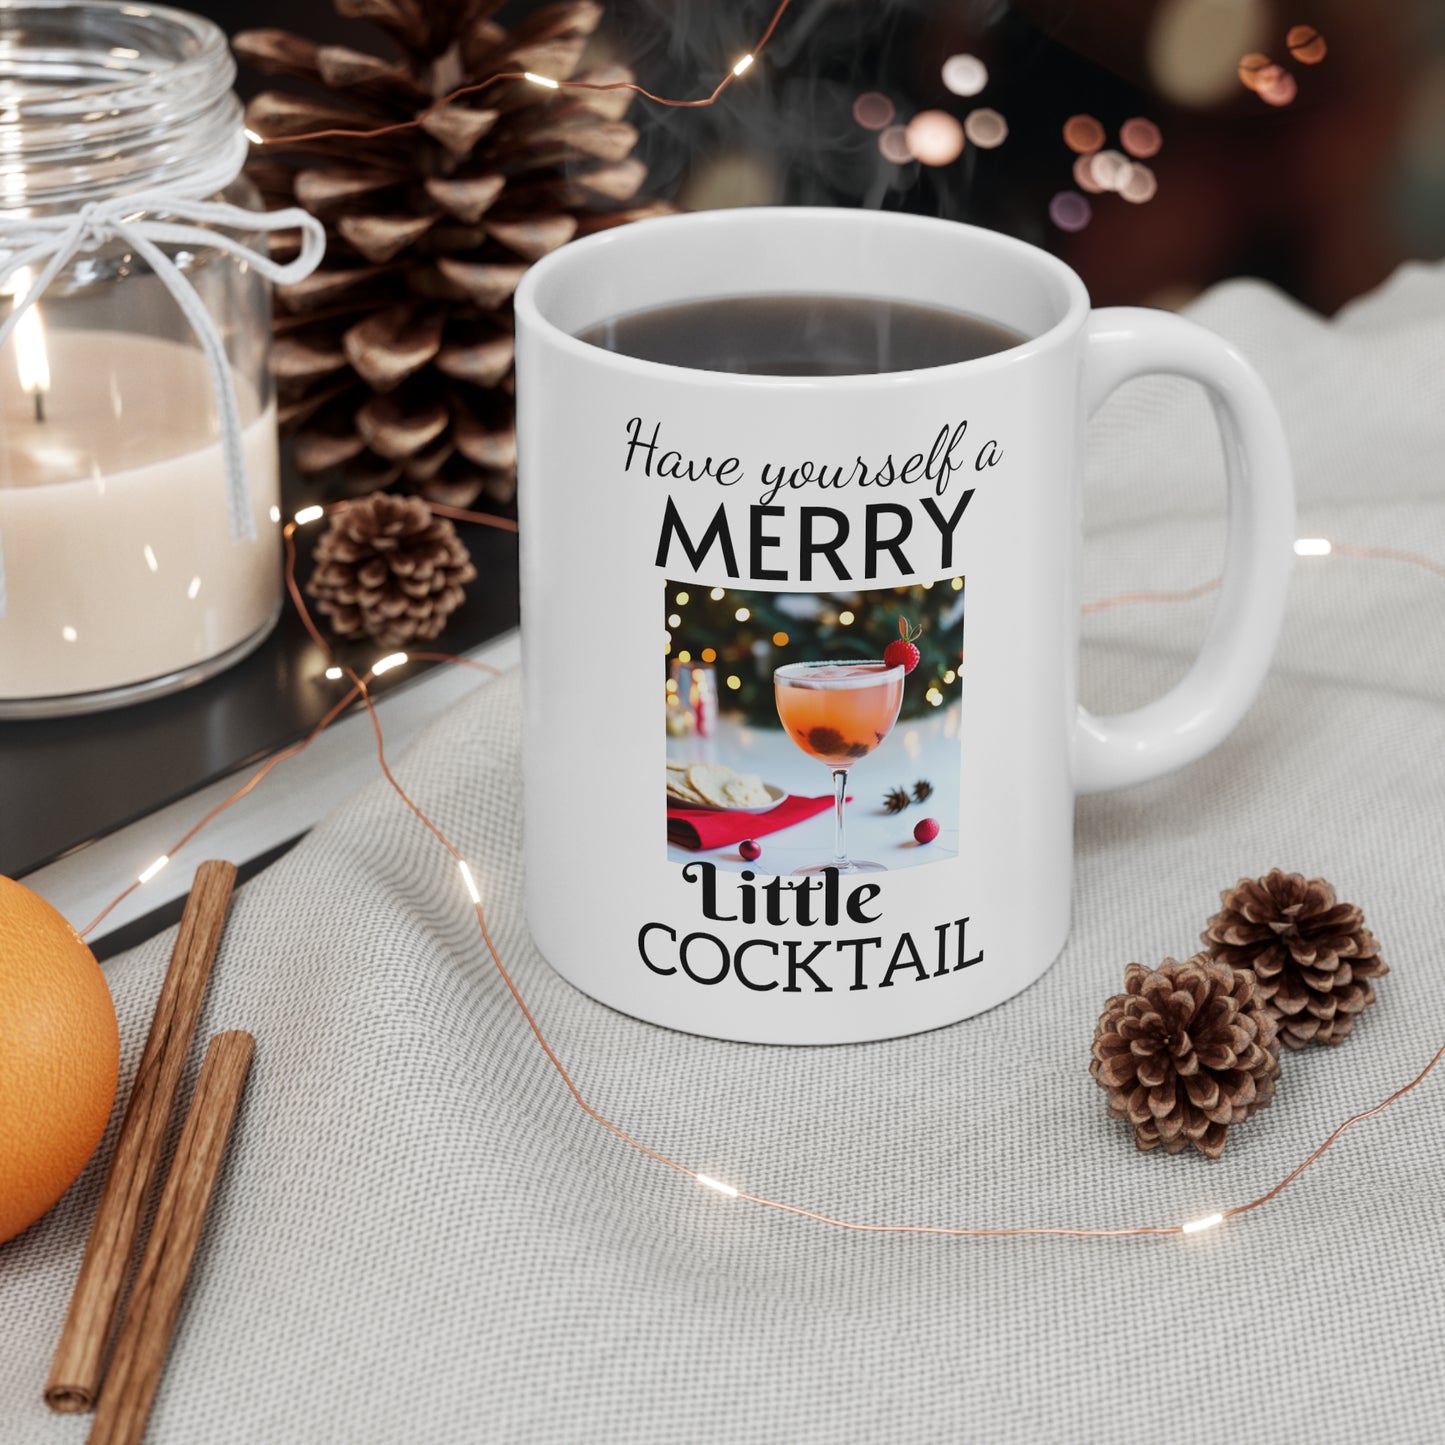 Have Yourself a Merry Little Cocktail Ceramic Mug Christmas  Holiday Mug  Coffee Mug 11oz